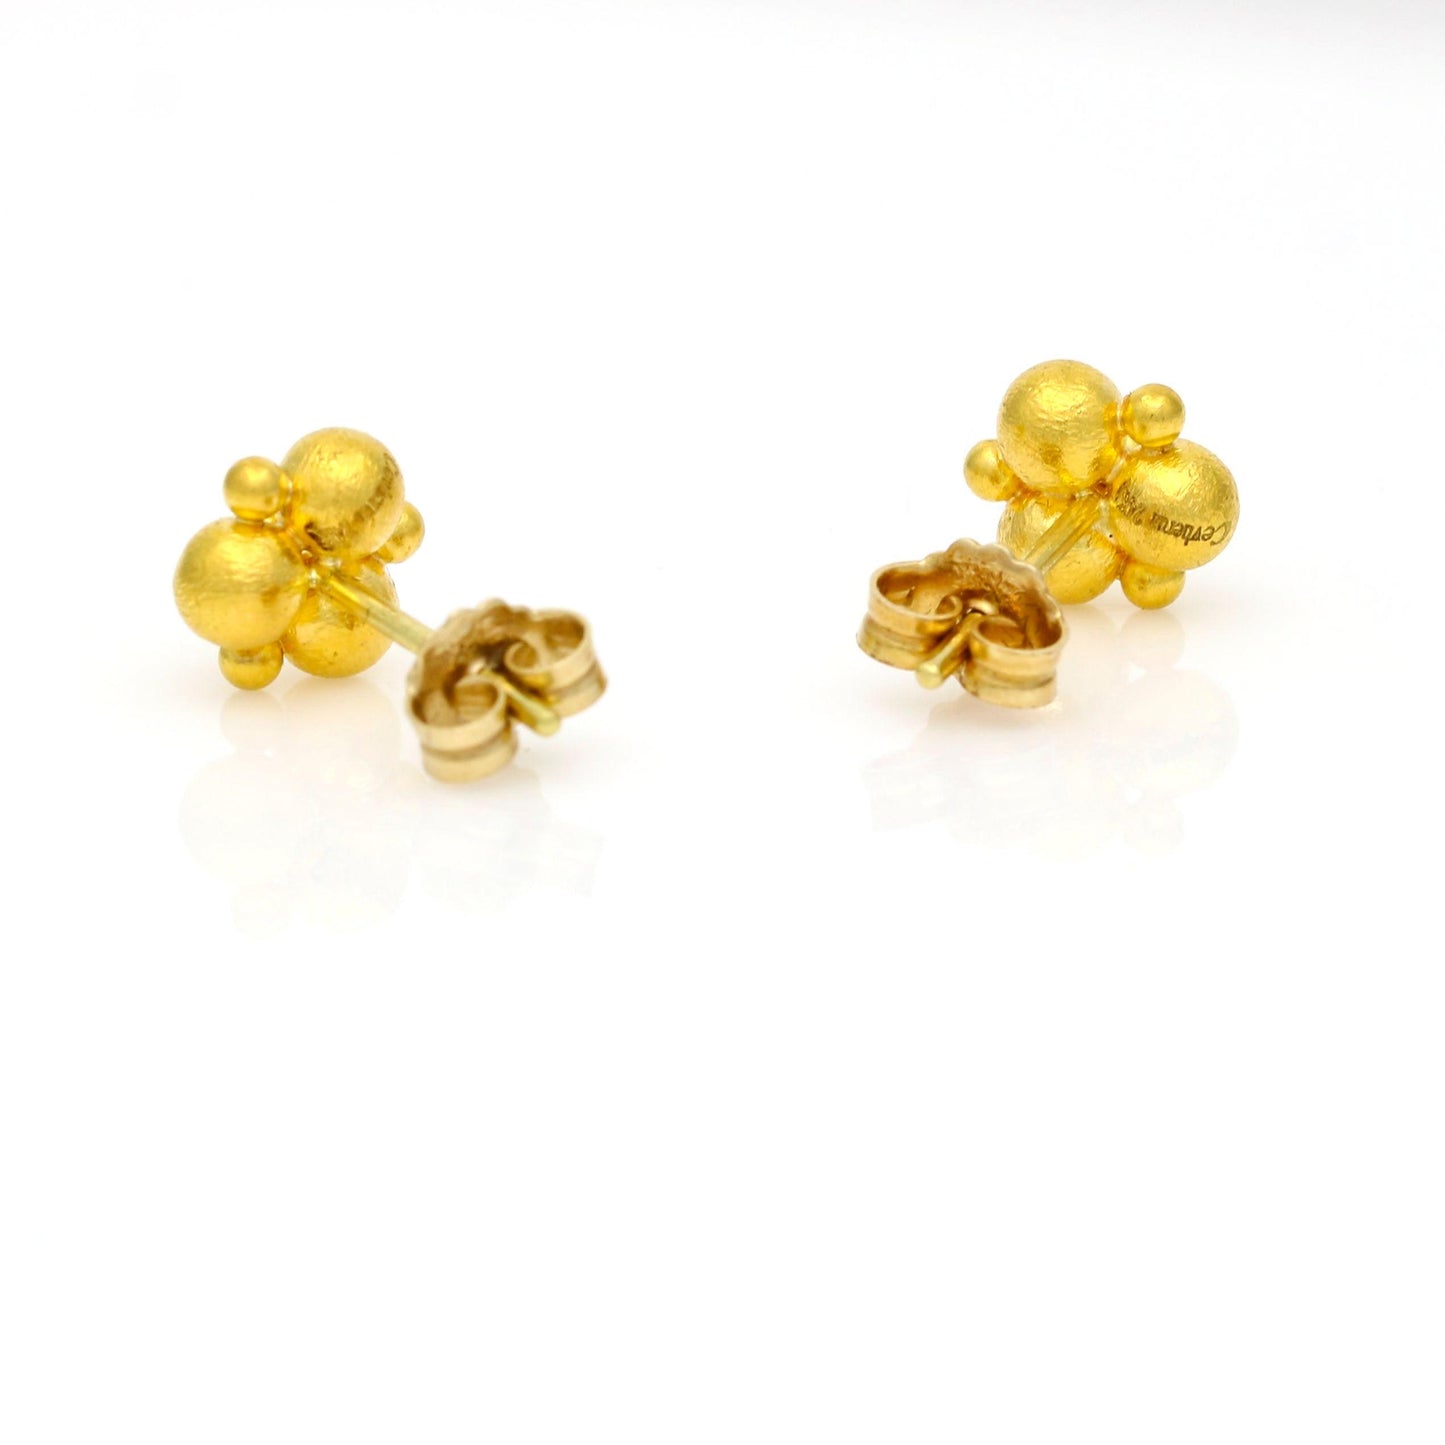 Cevherun 24k Gold Women's Stud Earrings - 31 Jewels Inc.